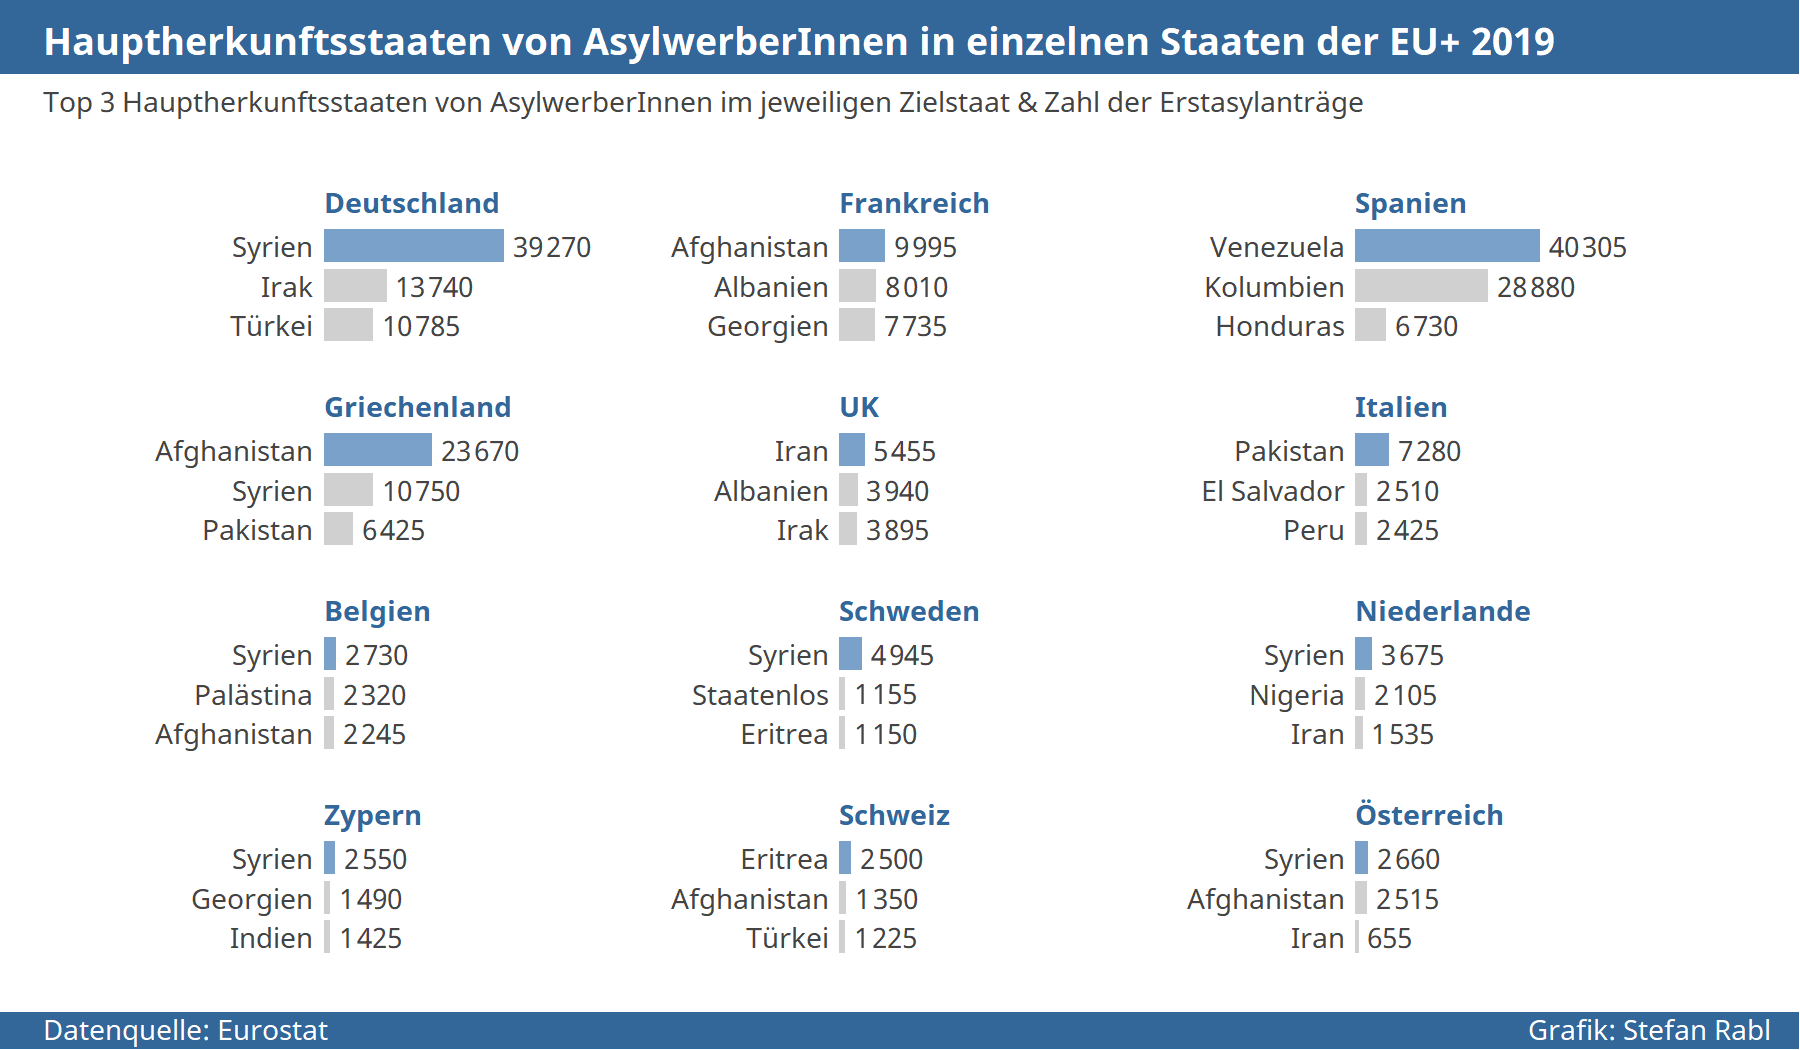 Grafik: Hauptherkunftsstaaten von AsylwerberInnen in einzelnen EU-Staaten